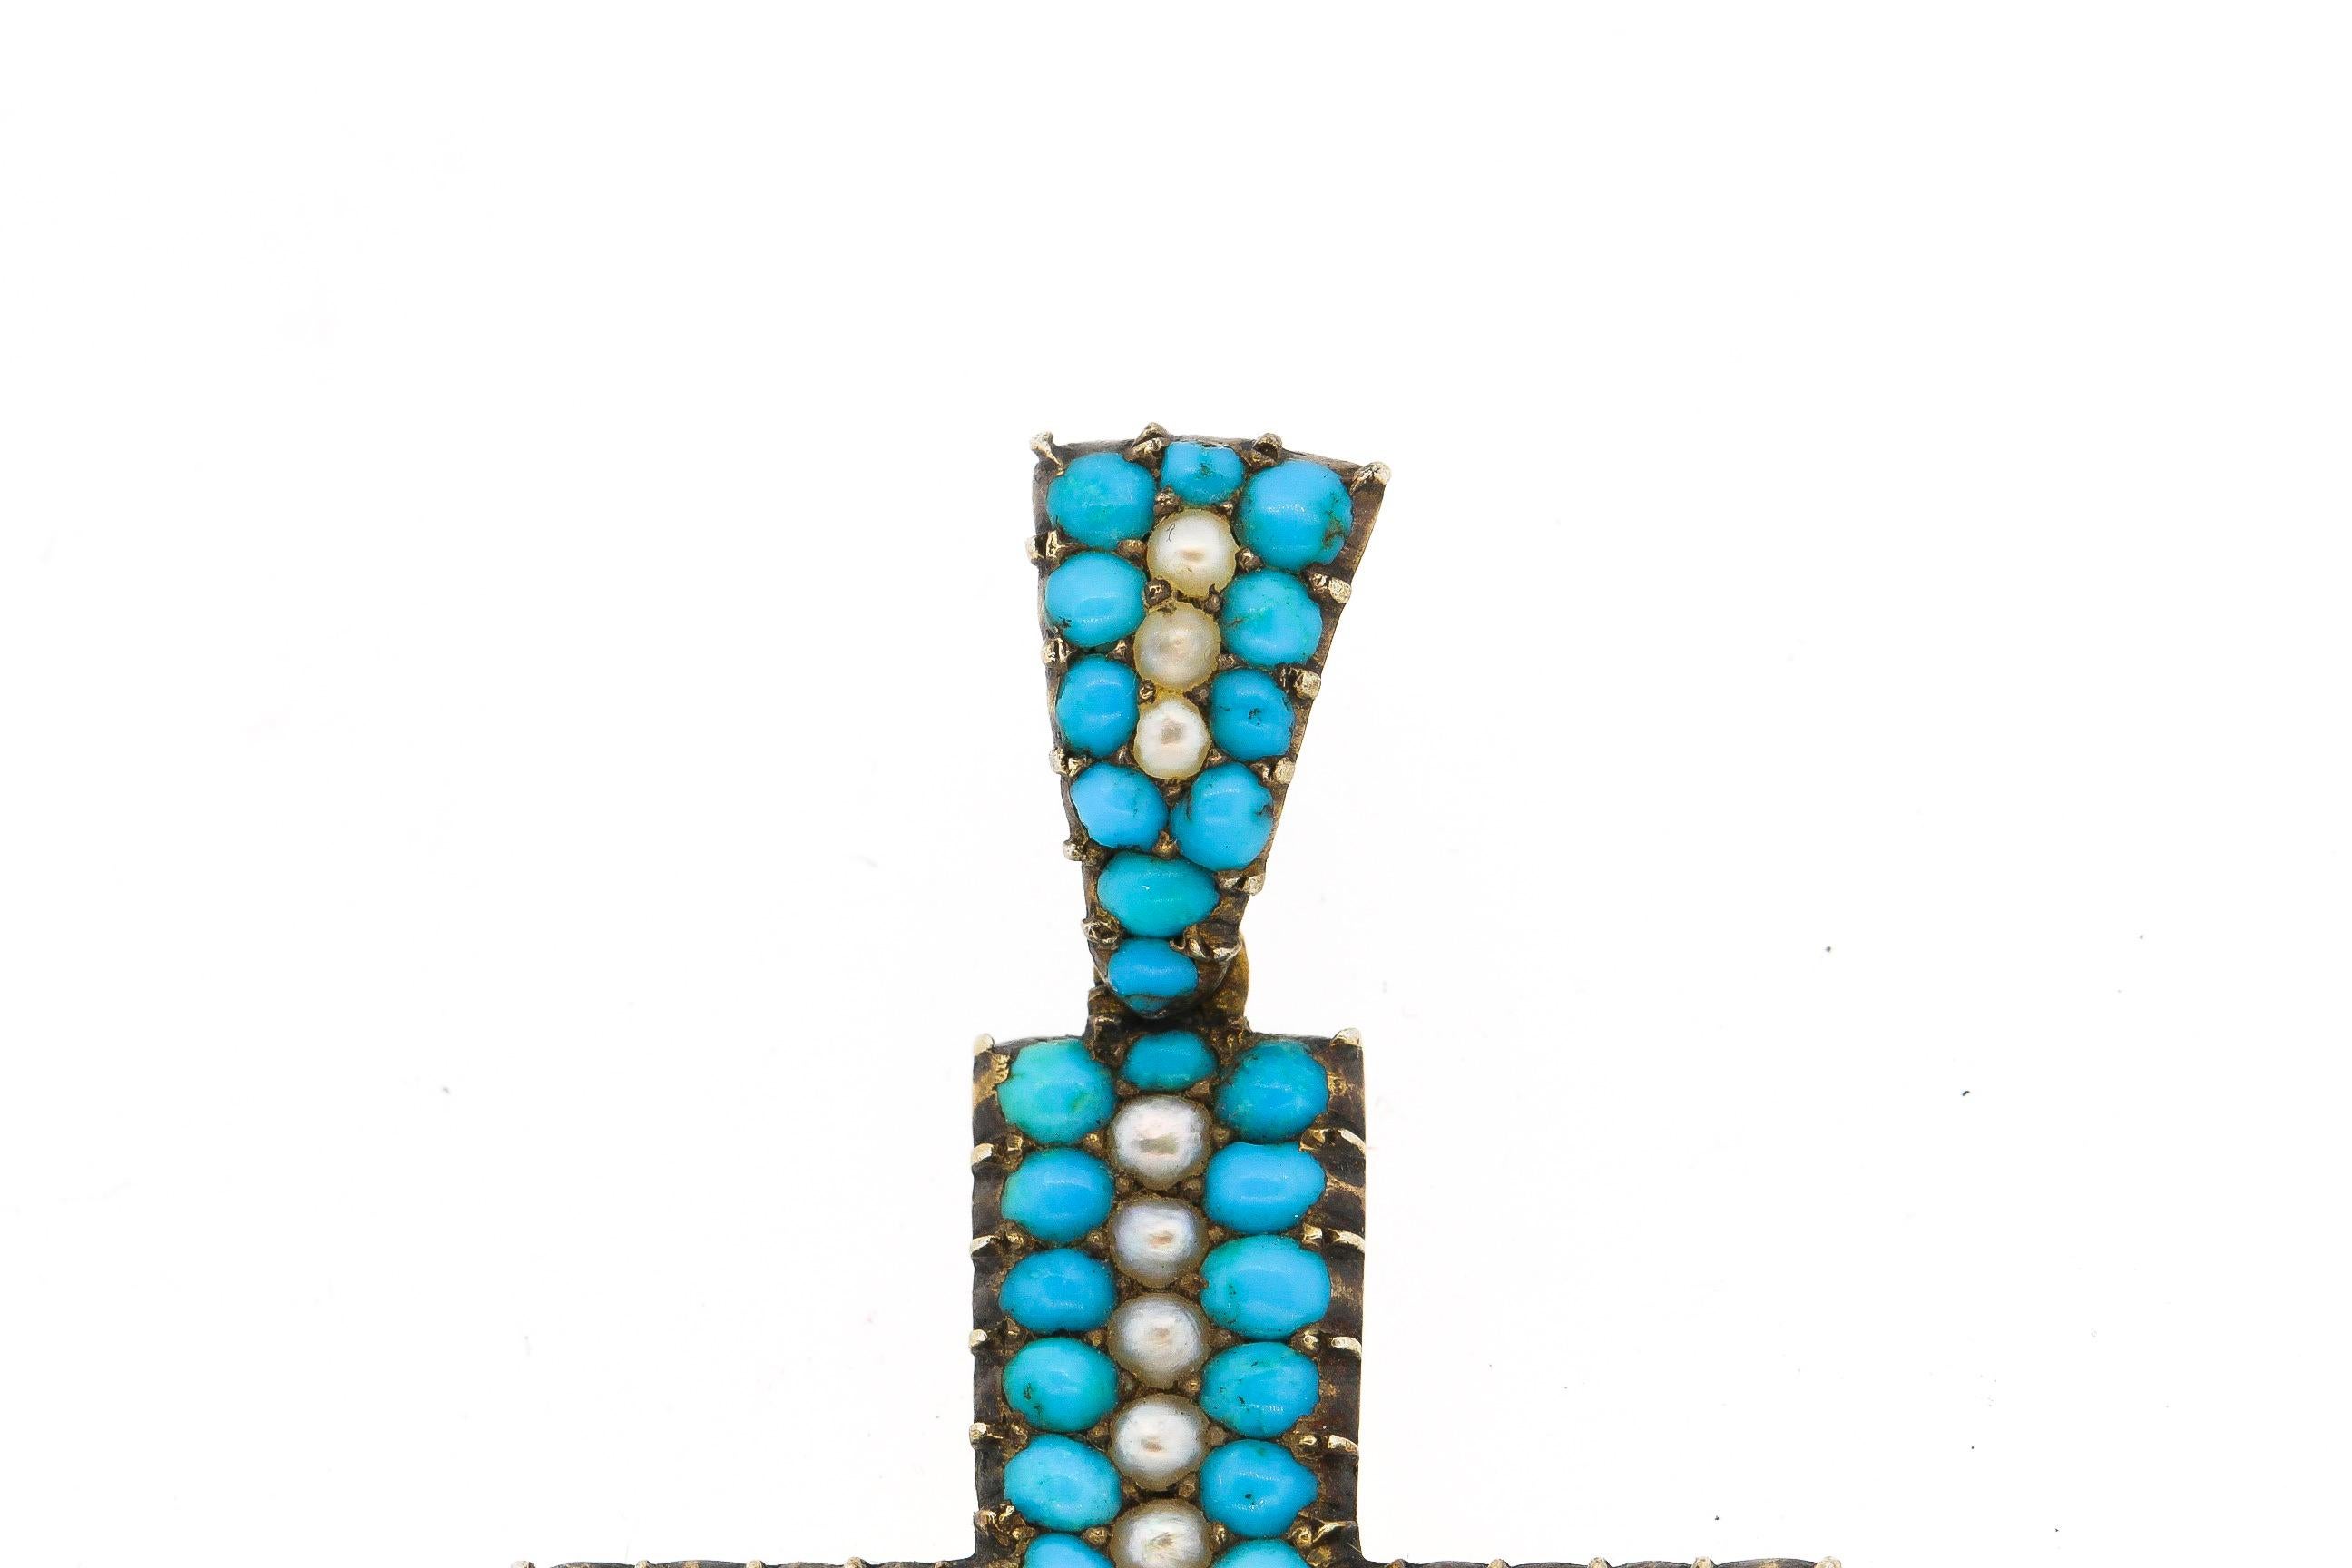 Ein leuchtend blauer Türkis und gespaltene Perle 14k Gold frühen viktorianischen Kreuz-Anhänger. Dieses Kreuz ist in ausgezeichnetem Zustand ohne Verfärbung für ihn Türkis und die Perlen sind alle Creme und weiß. Die Symmetrie des Kreuzes ist